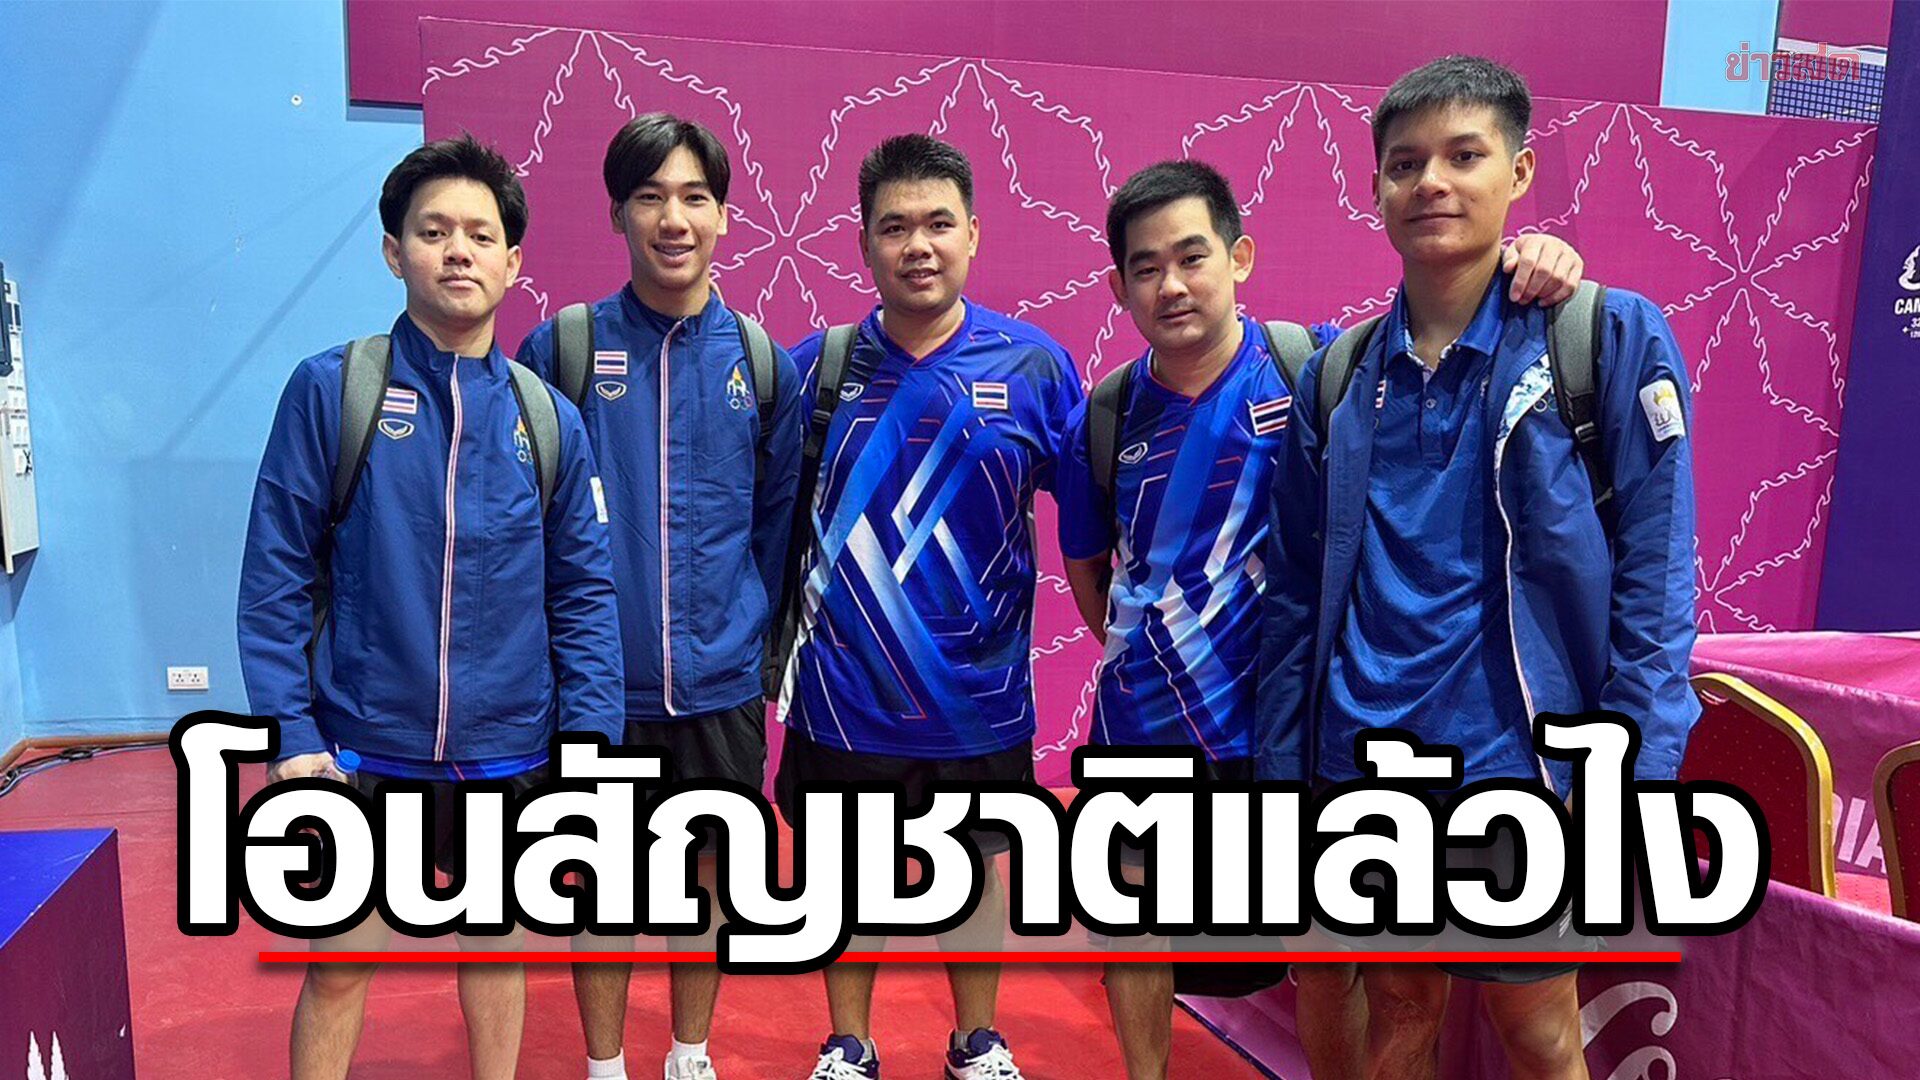 ลูกเด้งทีมชายไทย ไล่ตบ หนุ่มตี๋โอนสัญชาติกัมพูชาขาด ประเดิมรอบแรกซีเกมส์